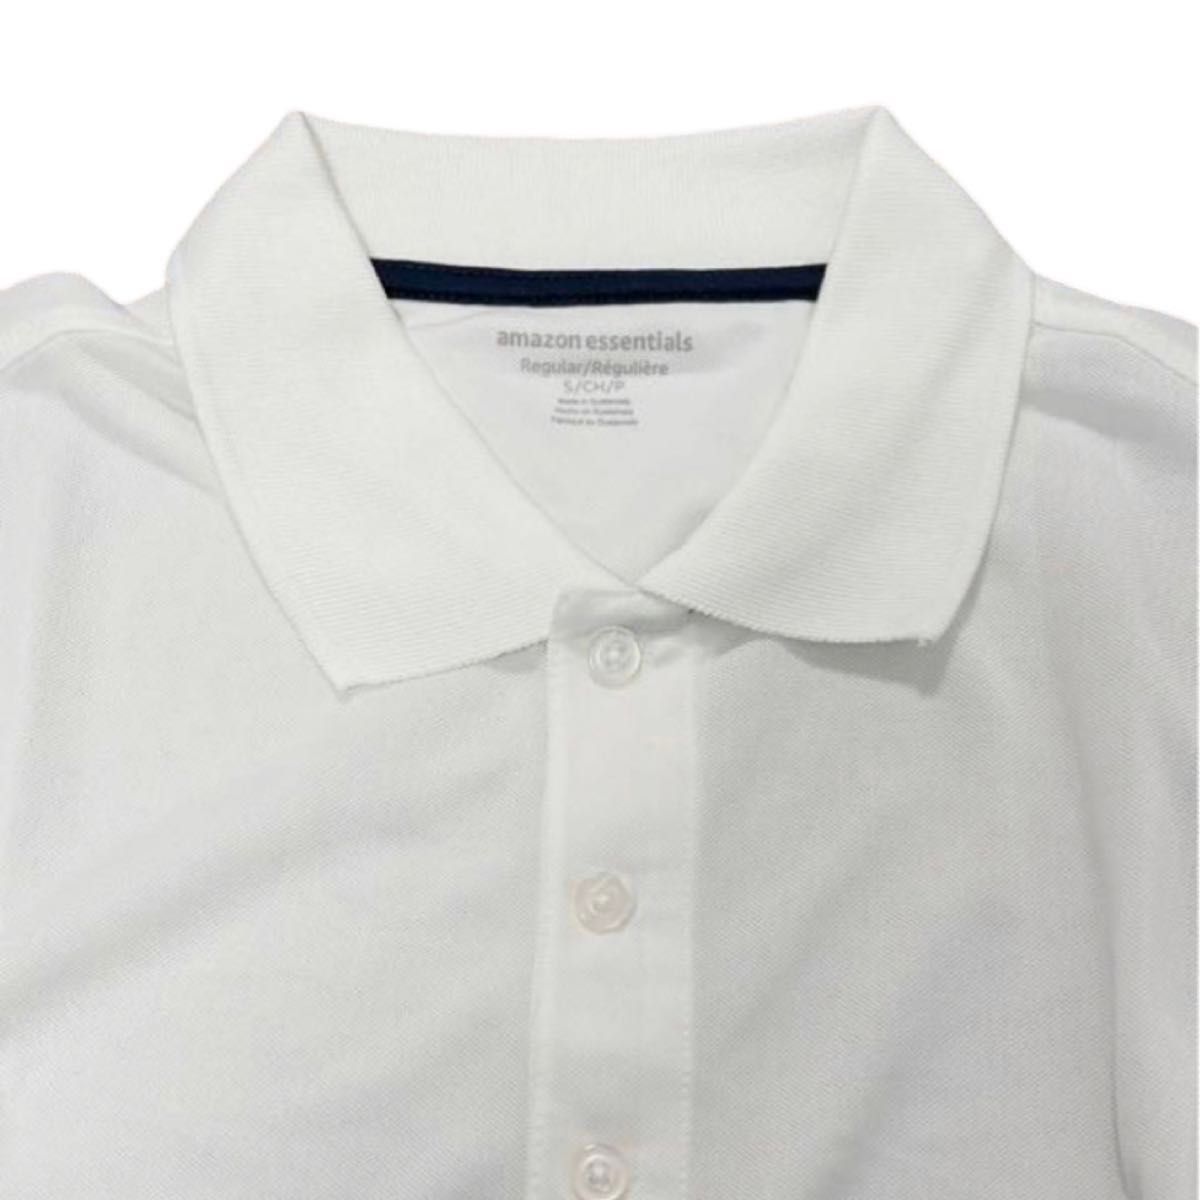 ゴルフポロシャツ 速乾性 レギュラーフィット メンズ Mサイズ 薄手 半袖 男性 ゴルフシャツ 白 ホワイト 涼しい